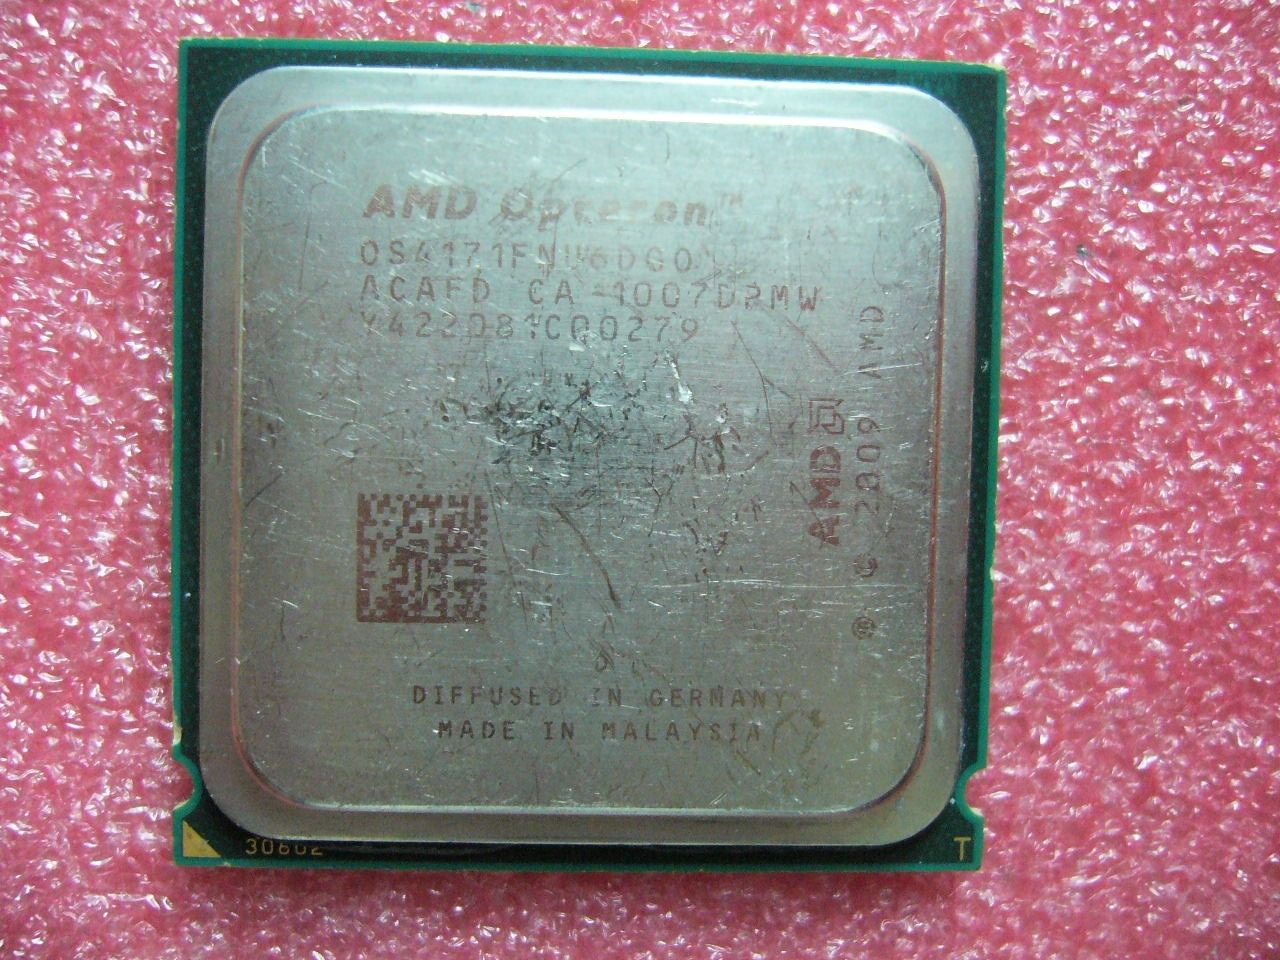 QTY 1x AMD Opteron 4171 HE 2.1 GHz Six Core (OS4171FNU6DGO) CPU Socket C32